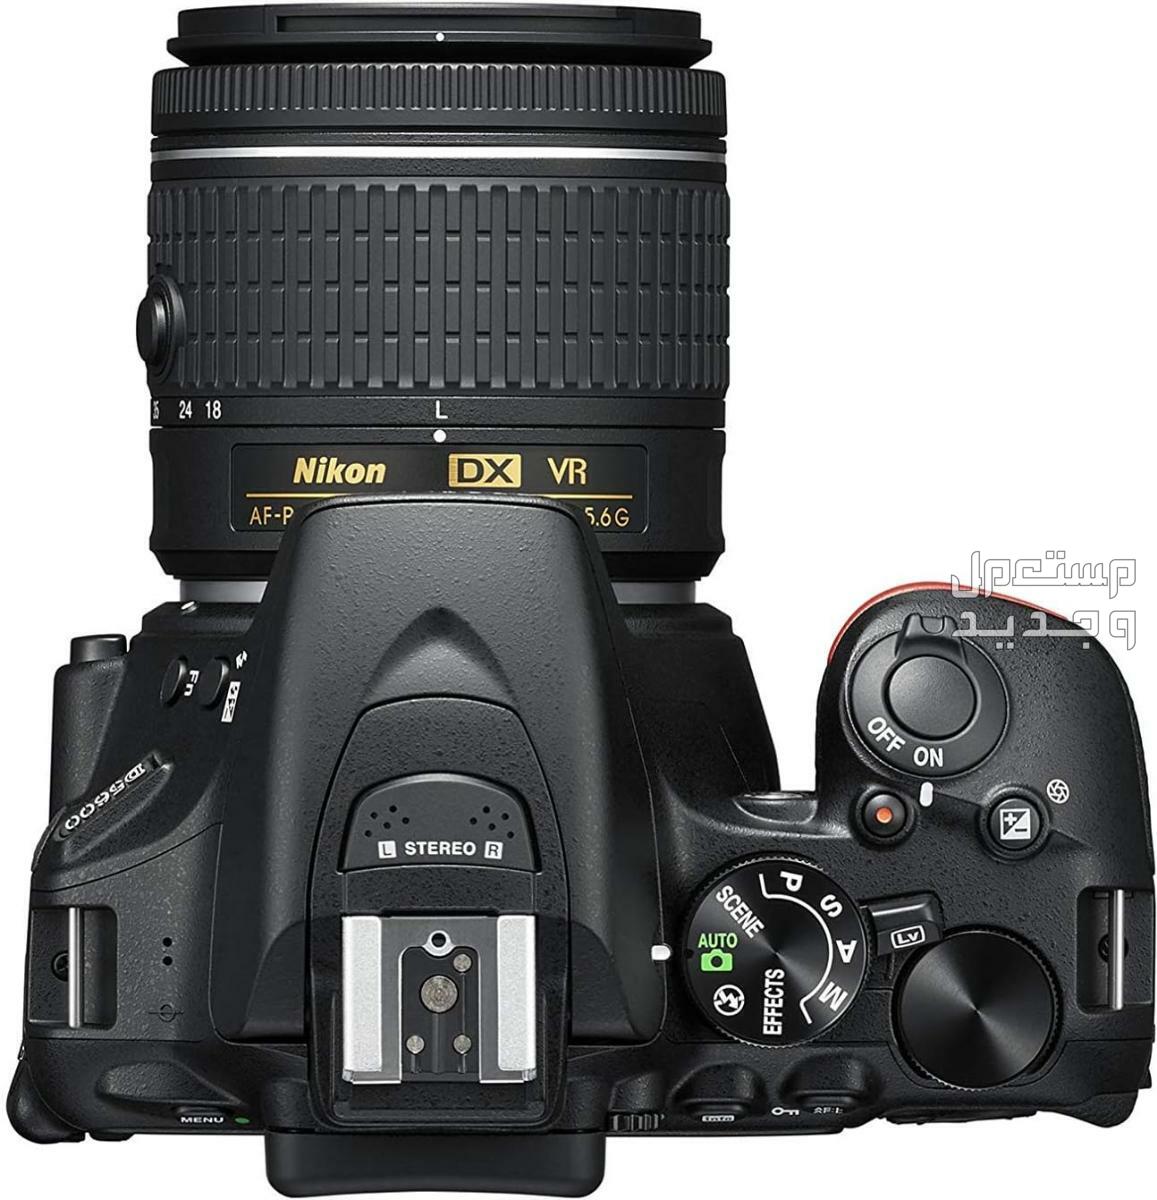 10 كاميرات تصوير ماركات عالمية بأسعار رخيصة في ليبيا مميزات كاميرا Nikon D5600